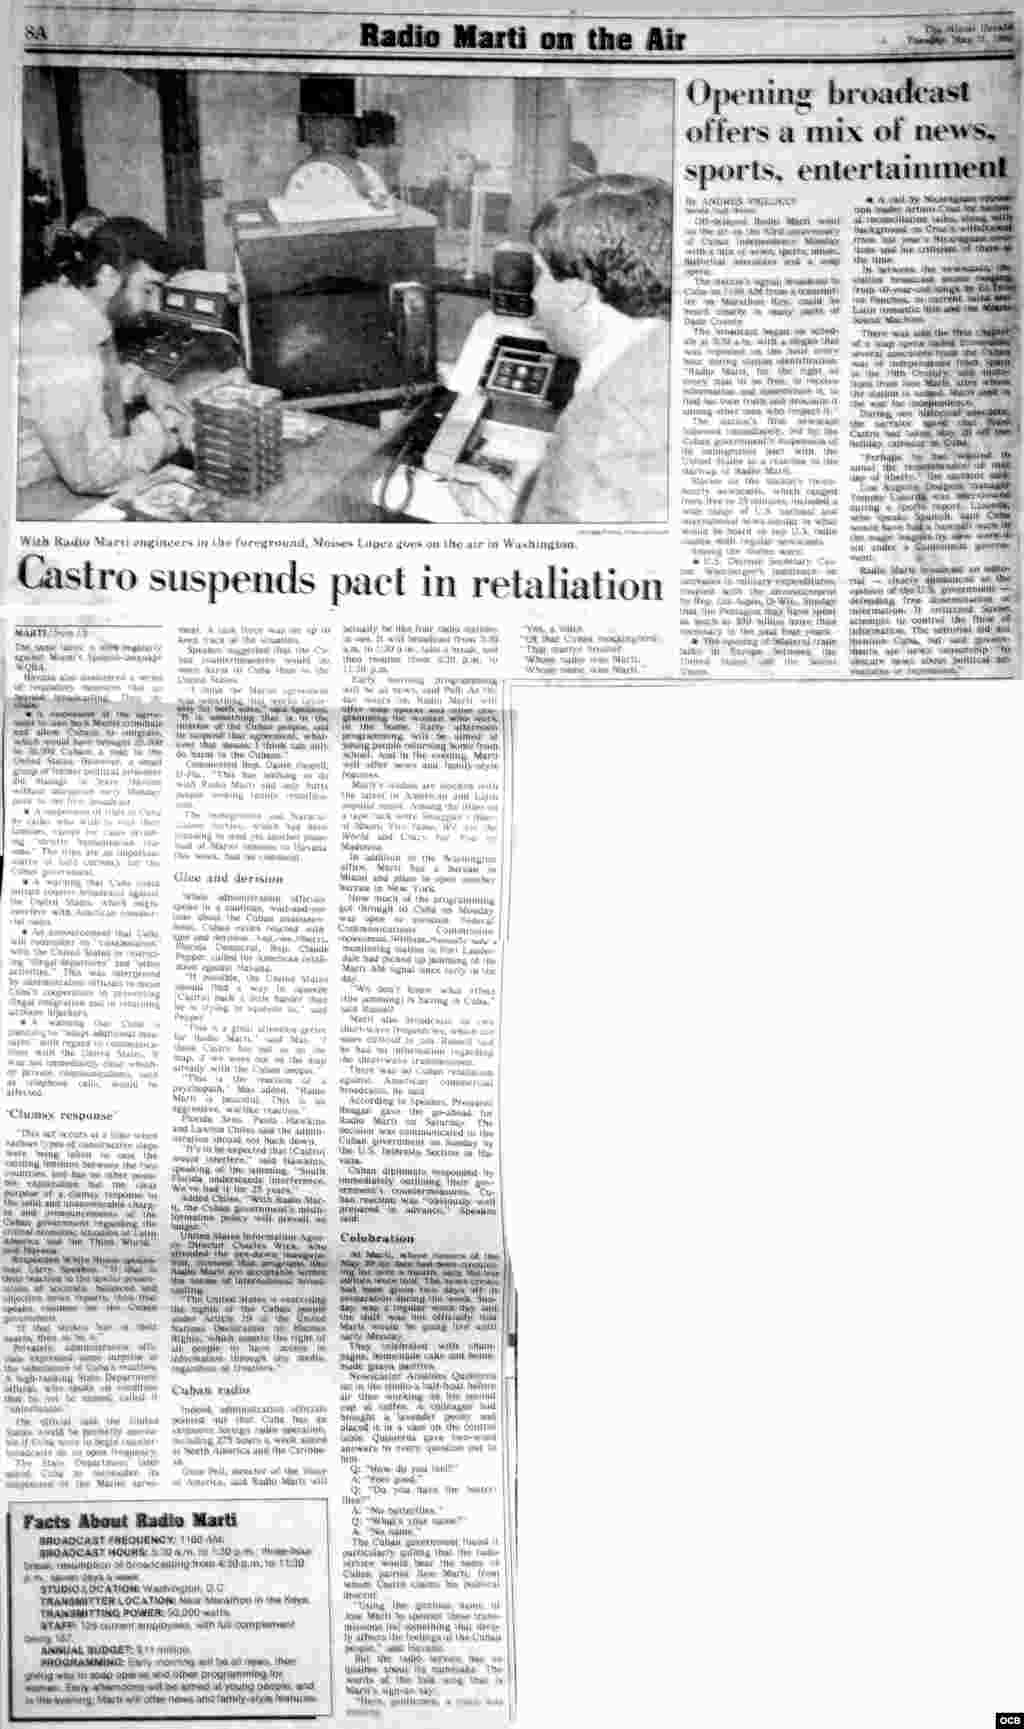 Radio Martí en el aire. The Miami Herald. Mayo 21, 1985.